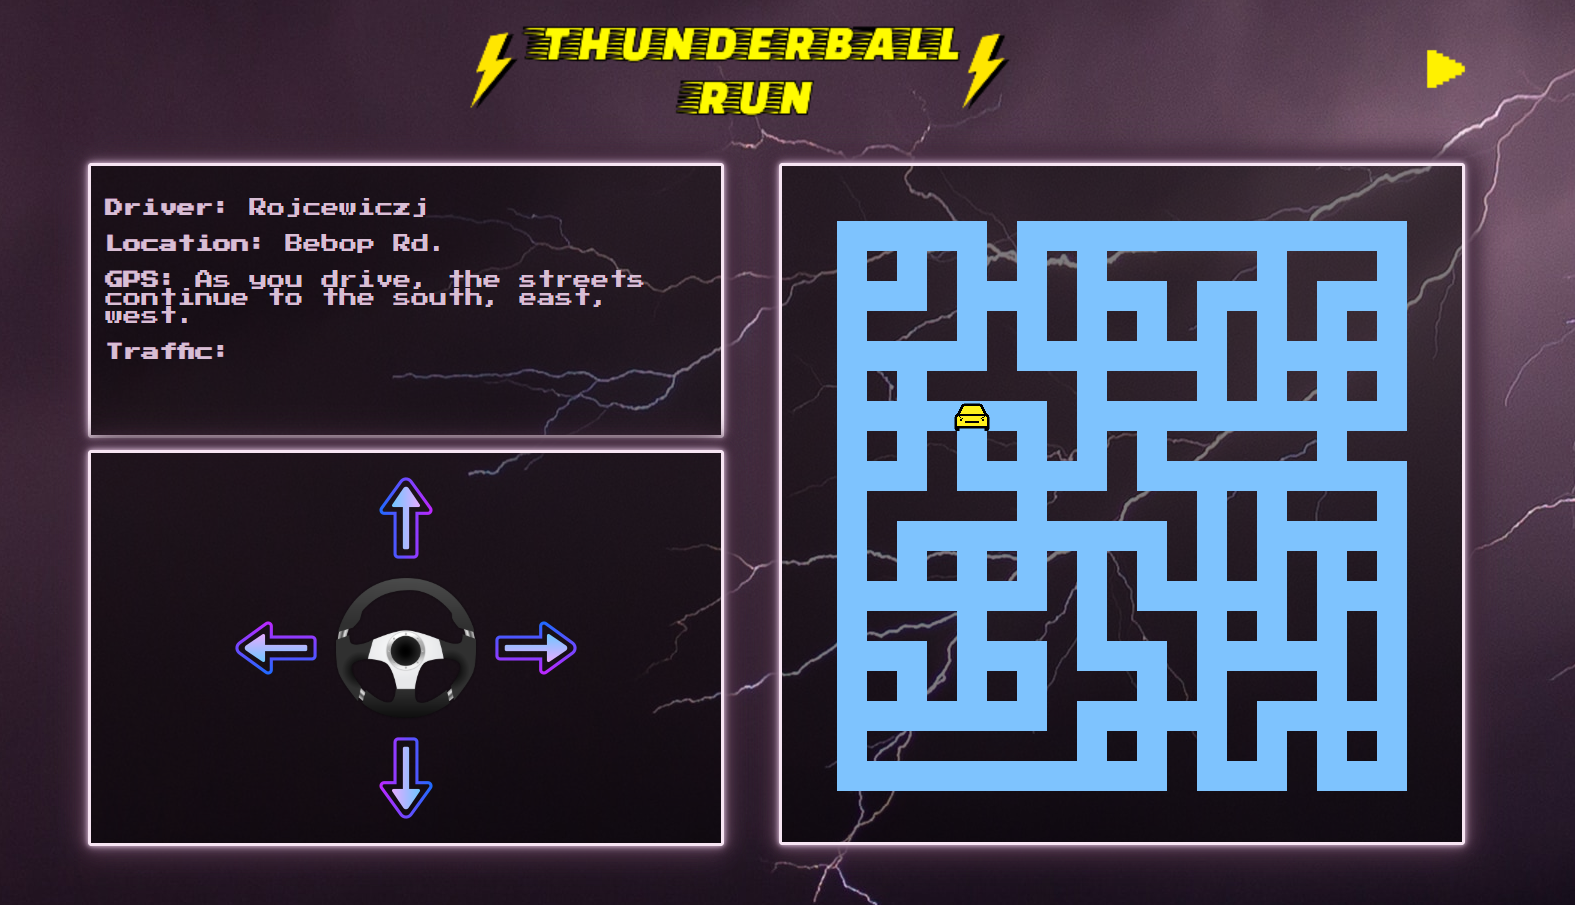 a screen-shot of my Thunder-ball Run app